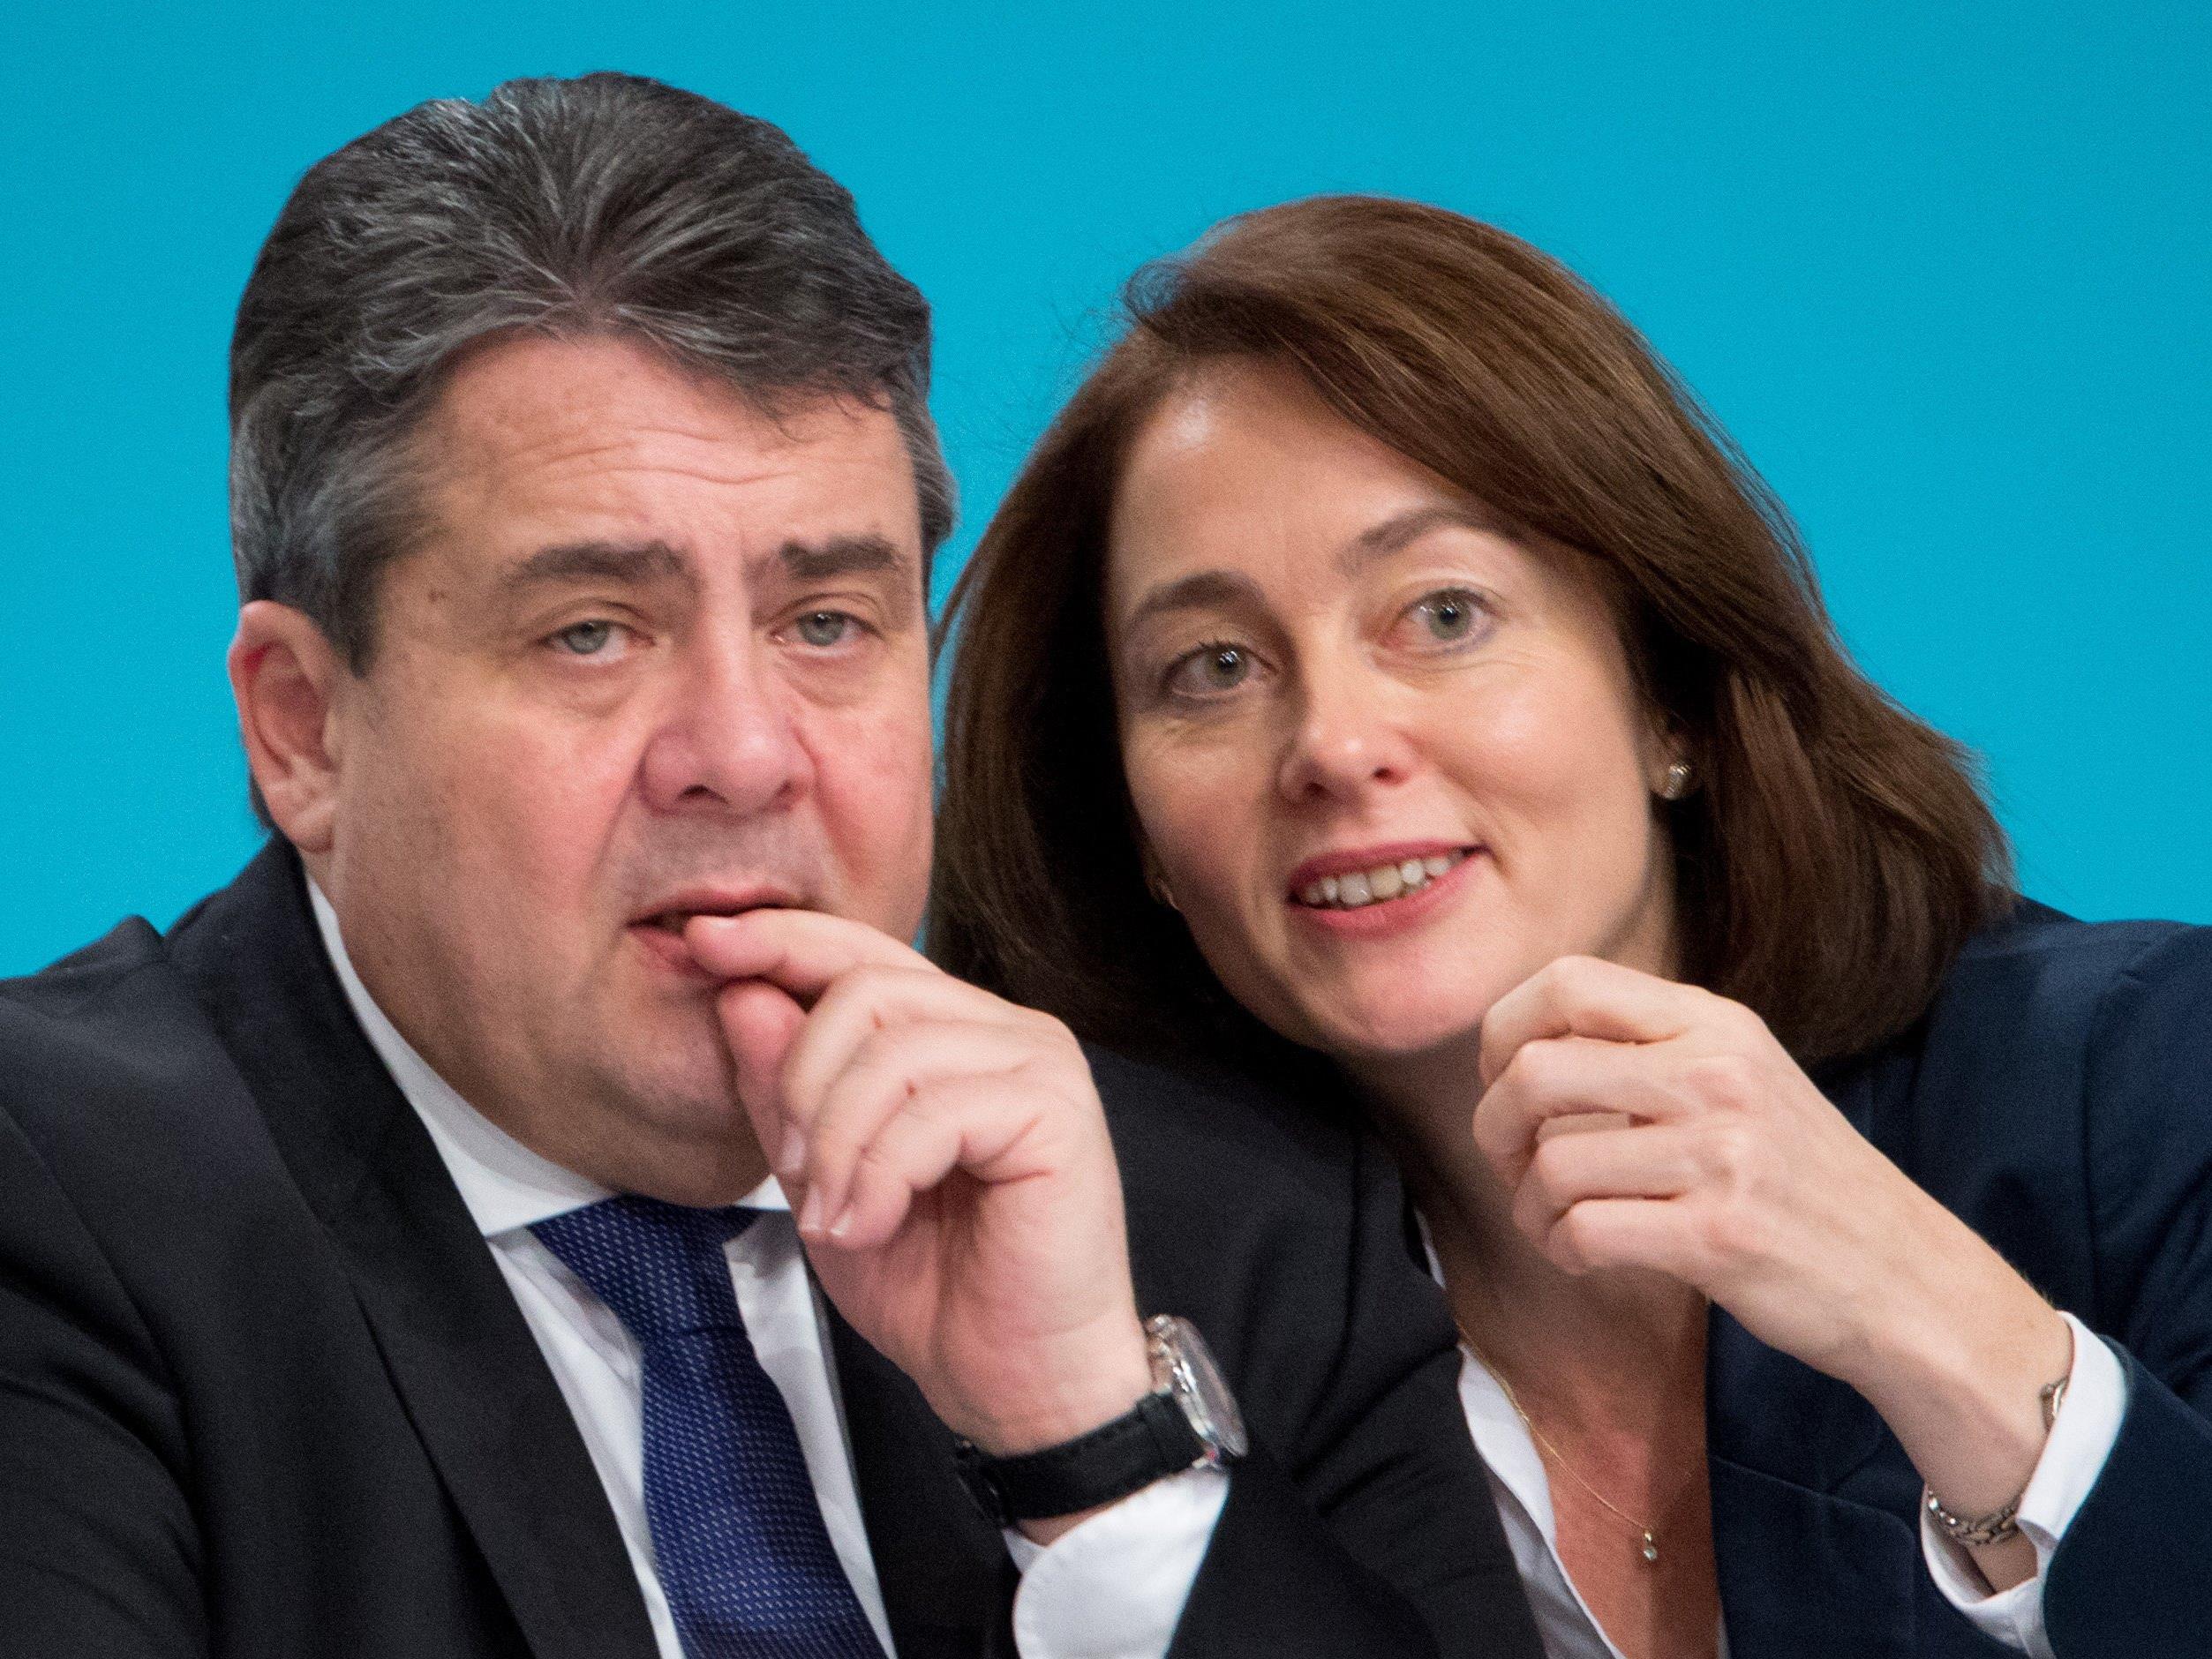 Deutsche Politiker Wollen Fpo Kandidaten Hofer Verhindern Bundesprasidentenwahl Vol At